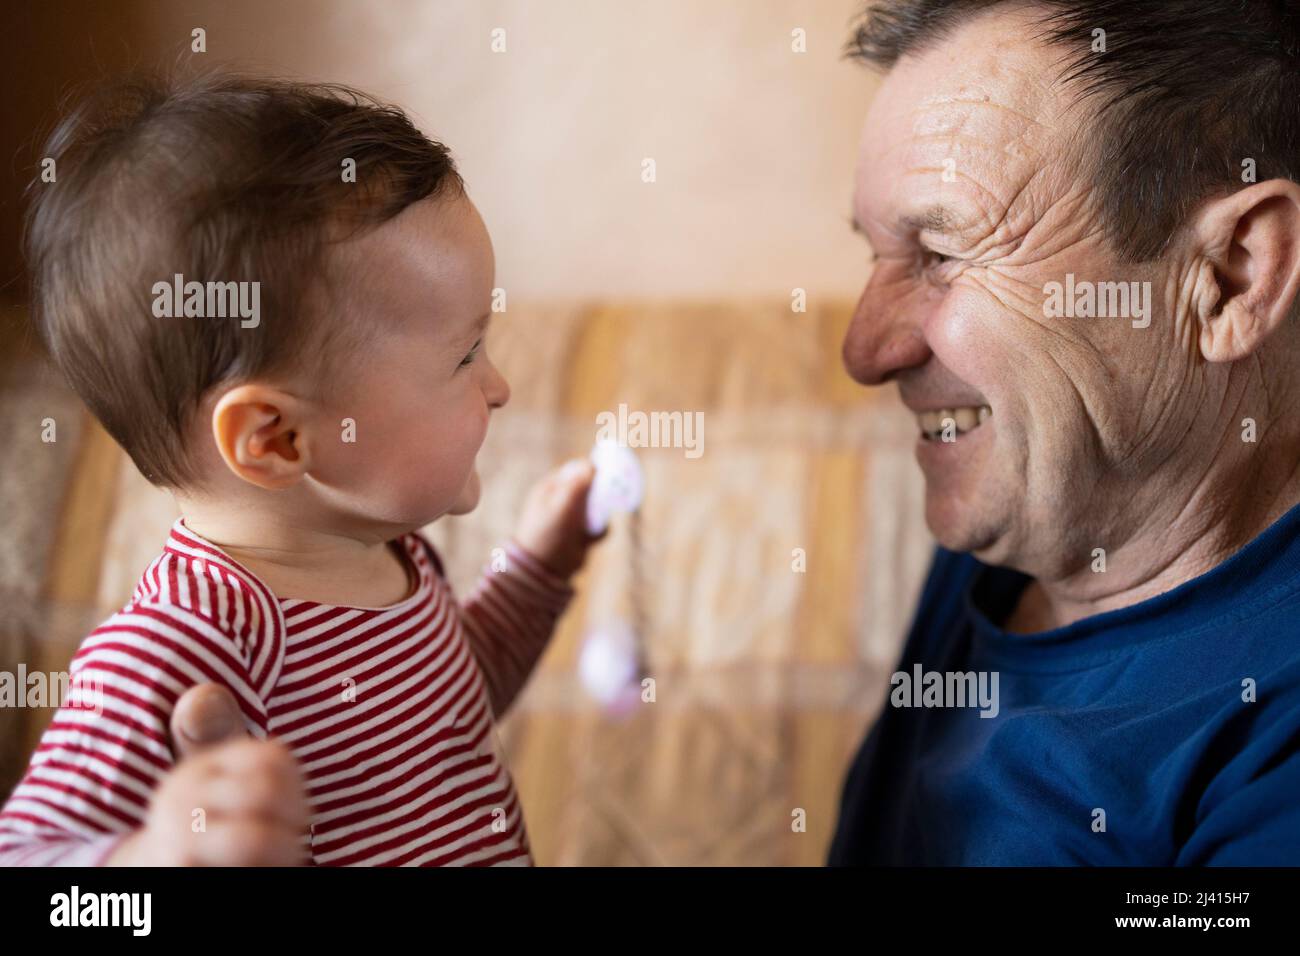 Bébé heureux et son grand-père souriant l'un à l'autre Banque D'Images